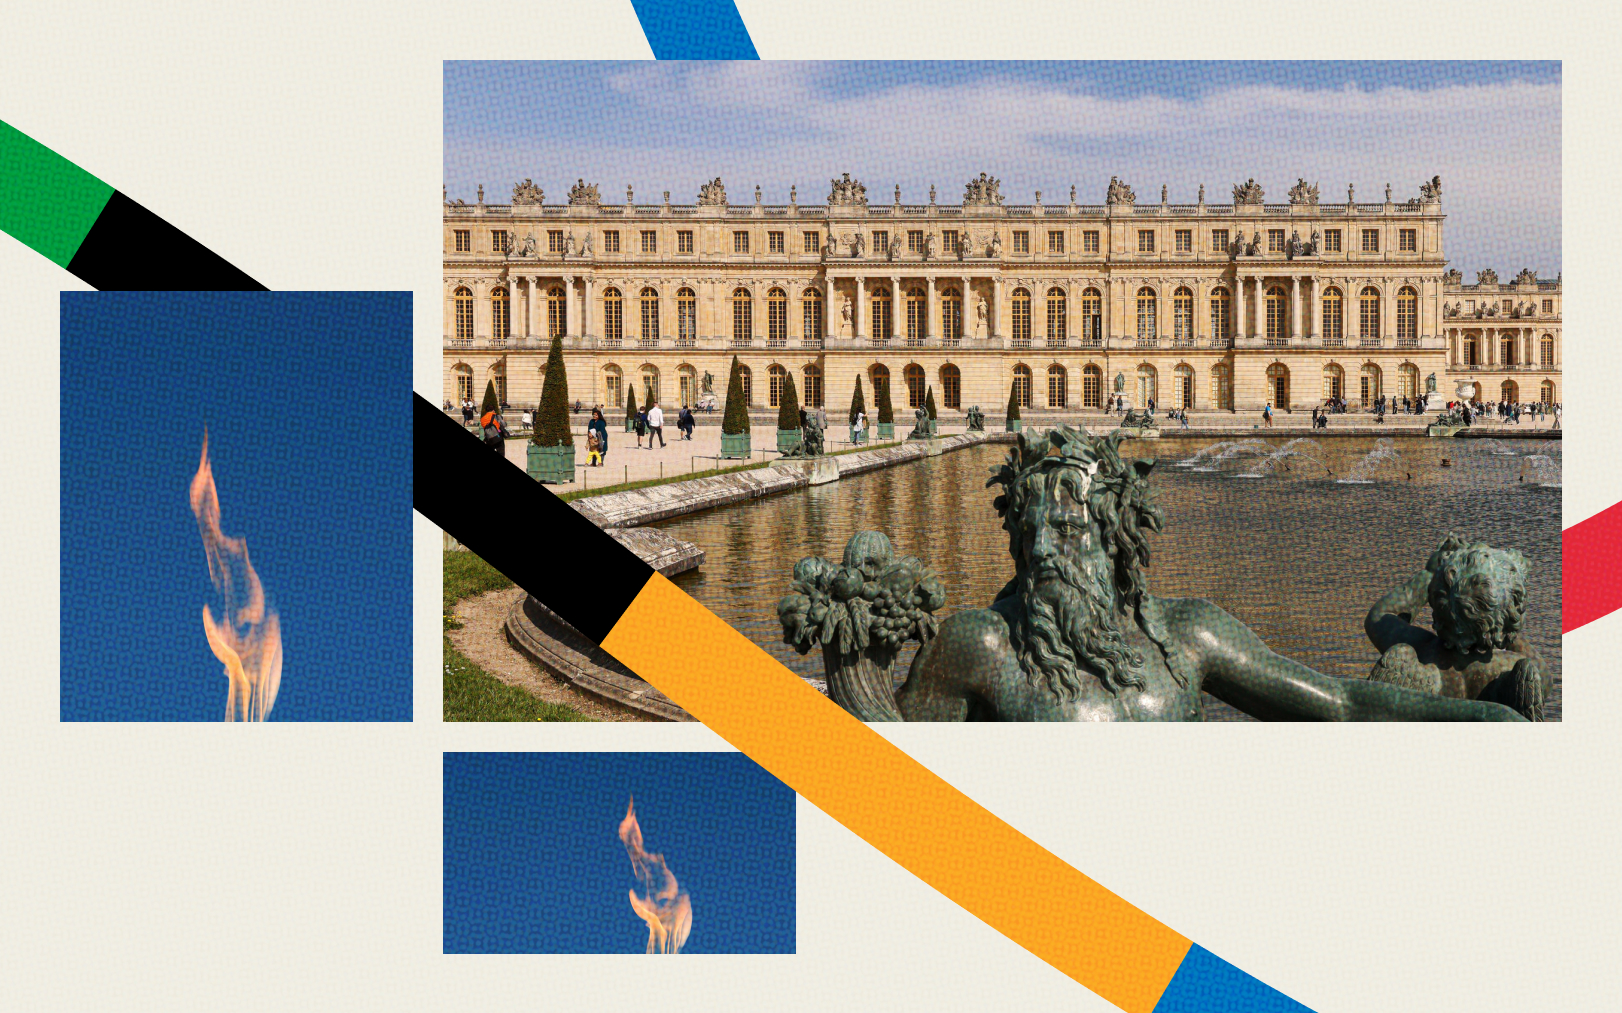 Versailles (Yvelines) accueillera plusieurs épreuves lors des Jeux olympiques de Paris 2024, mais le château restera ouvert aux visiteurs durant la période, tout comme les jardins et le parc. Montage LP/Olivier Corsan